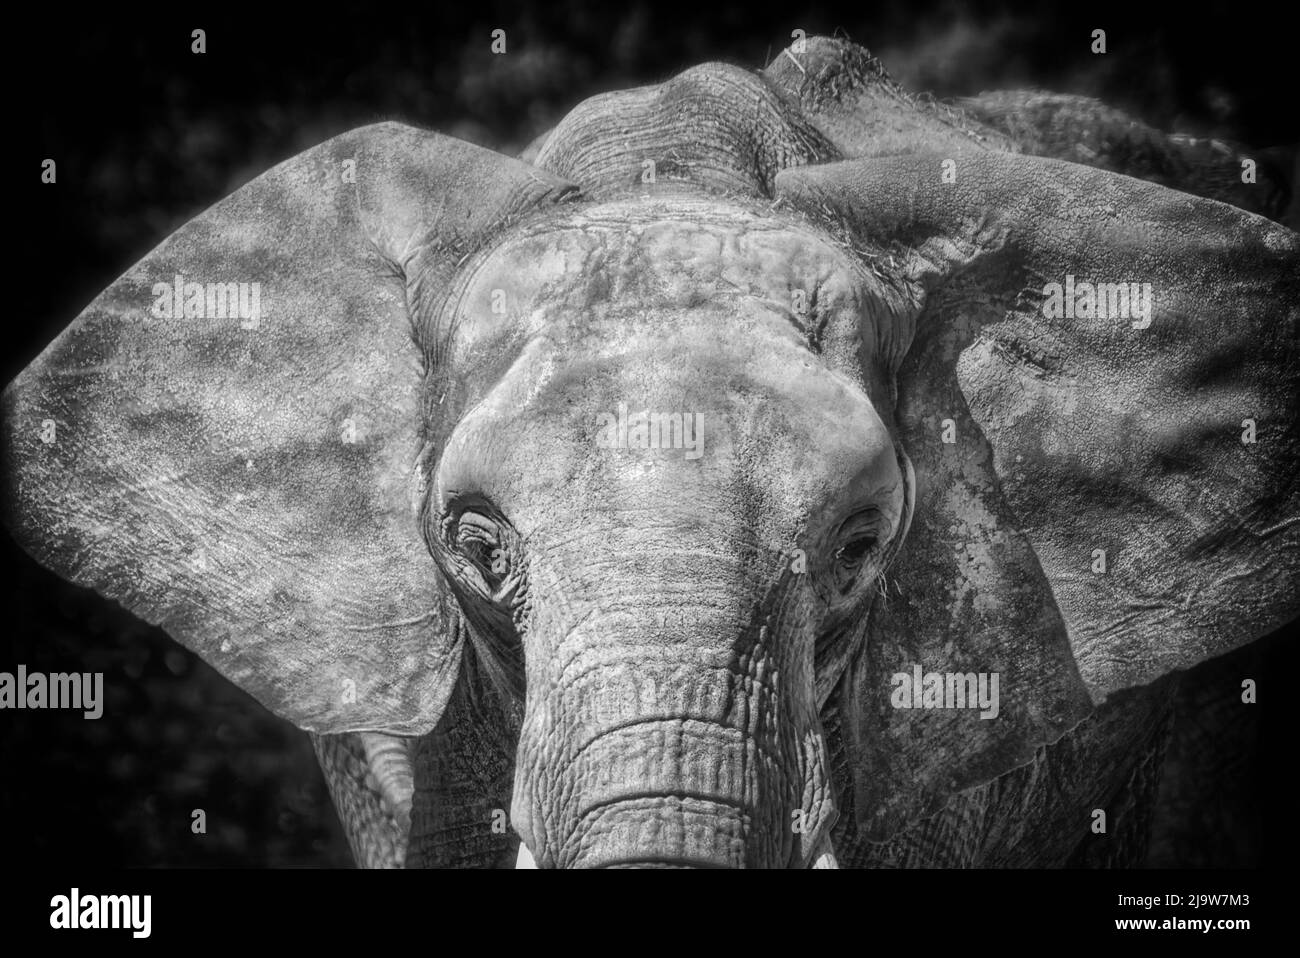 L'éléphant d'Afrique Banque D'Images